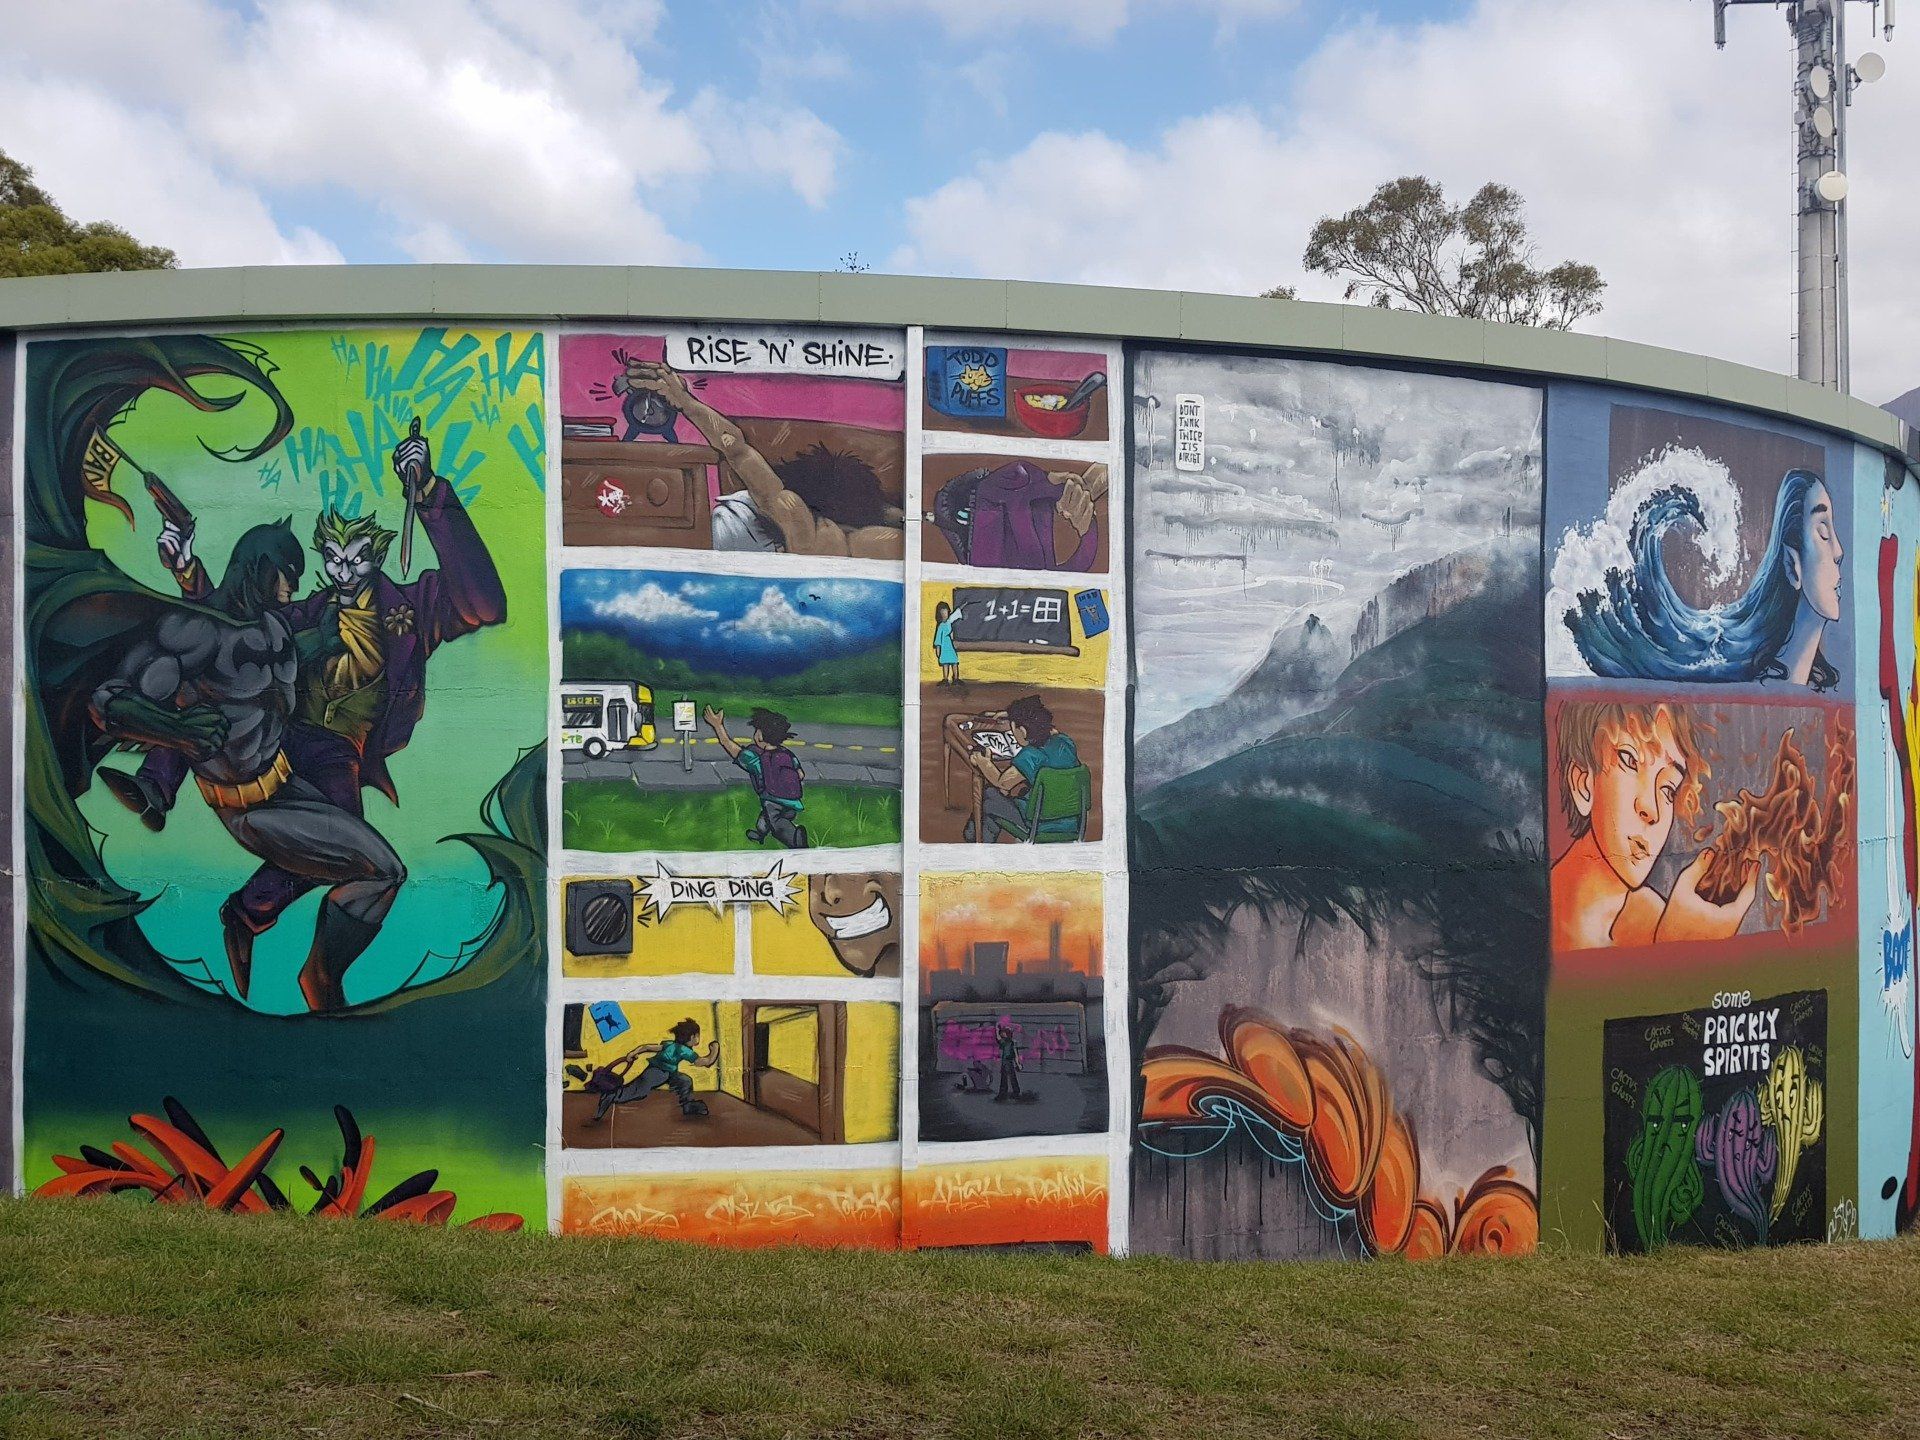 West Moonah Water Tank Art, Australian Silo Art trail